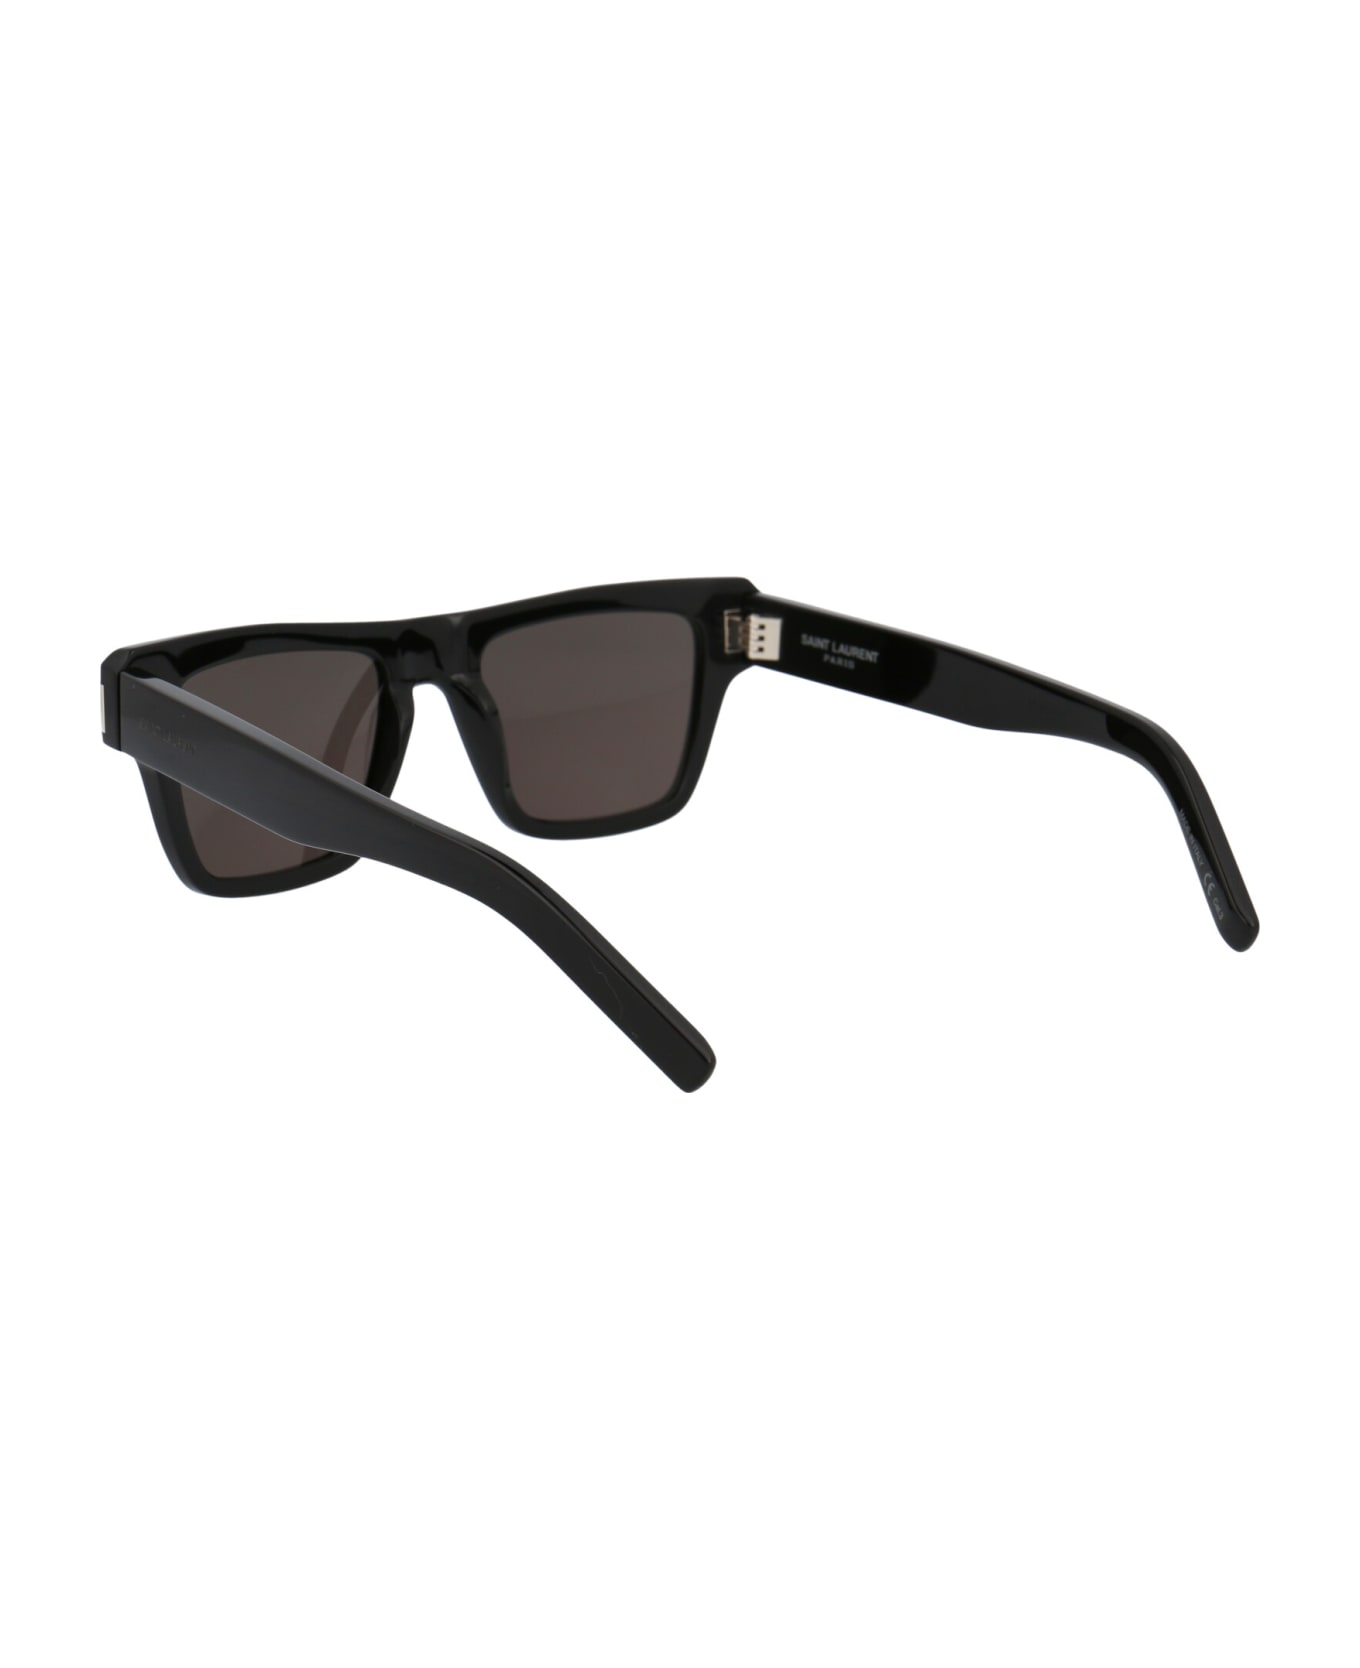 Saint Laurent Eyewear Sl 469 Sunglasses - 001 BLACK BLACK BLACK